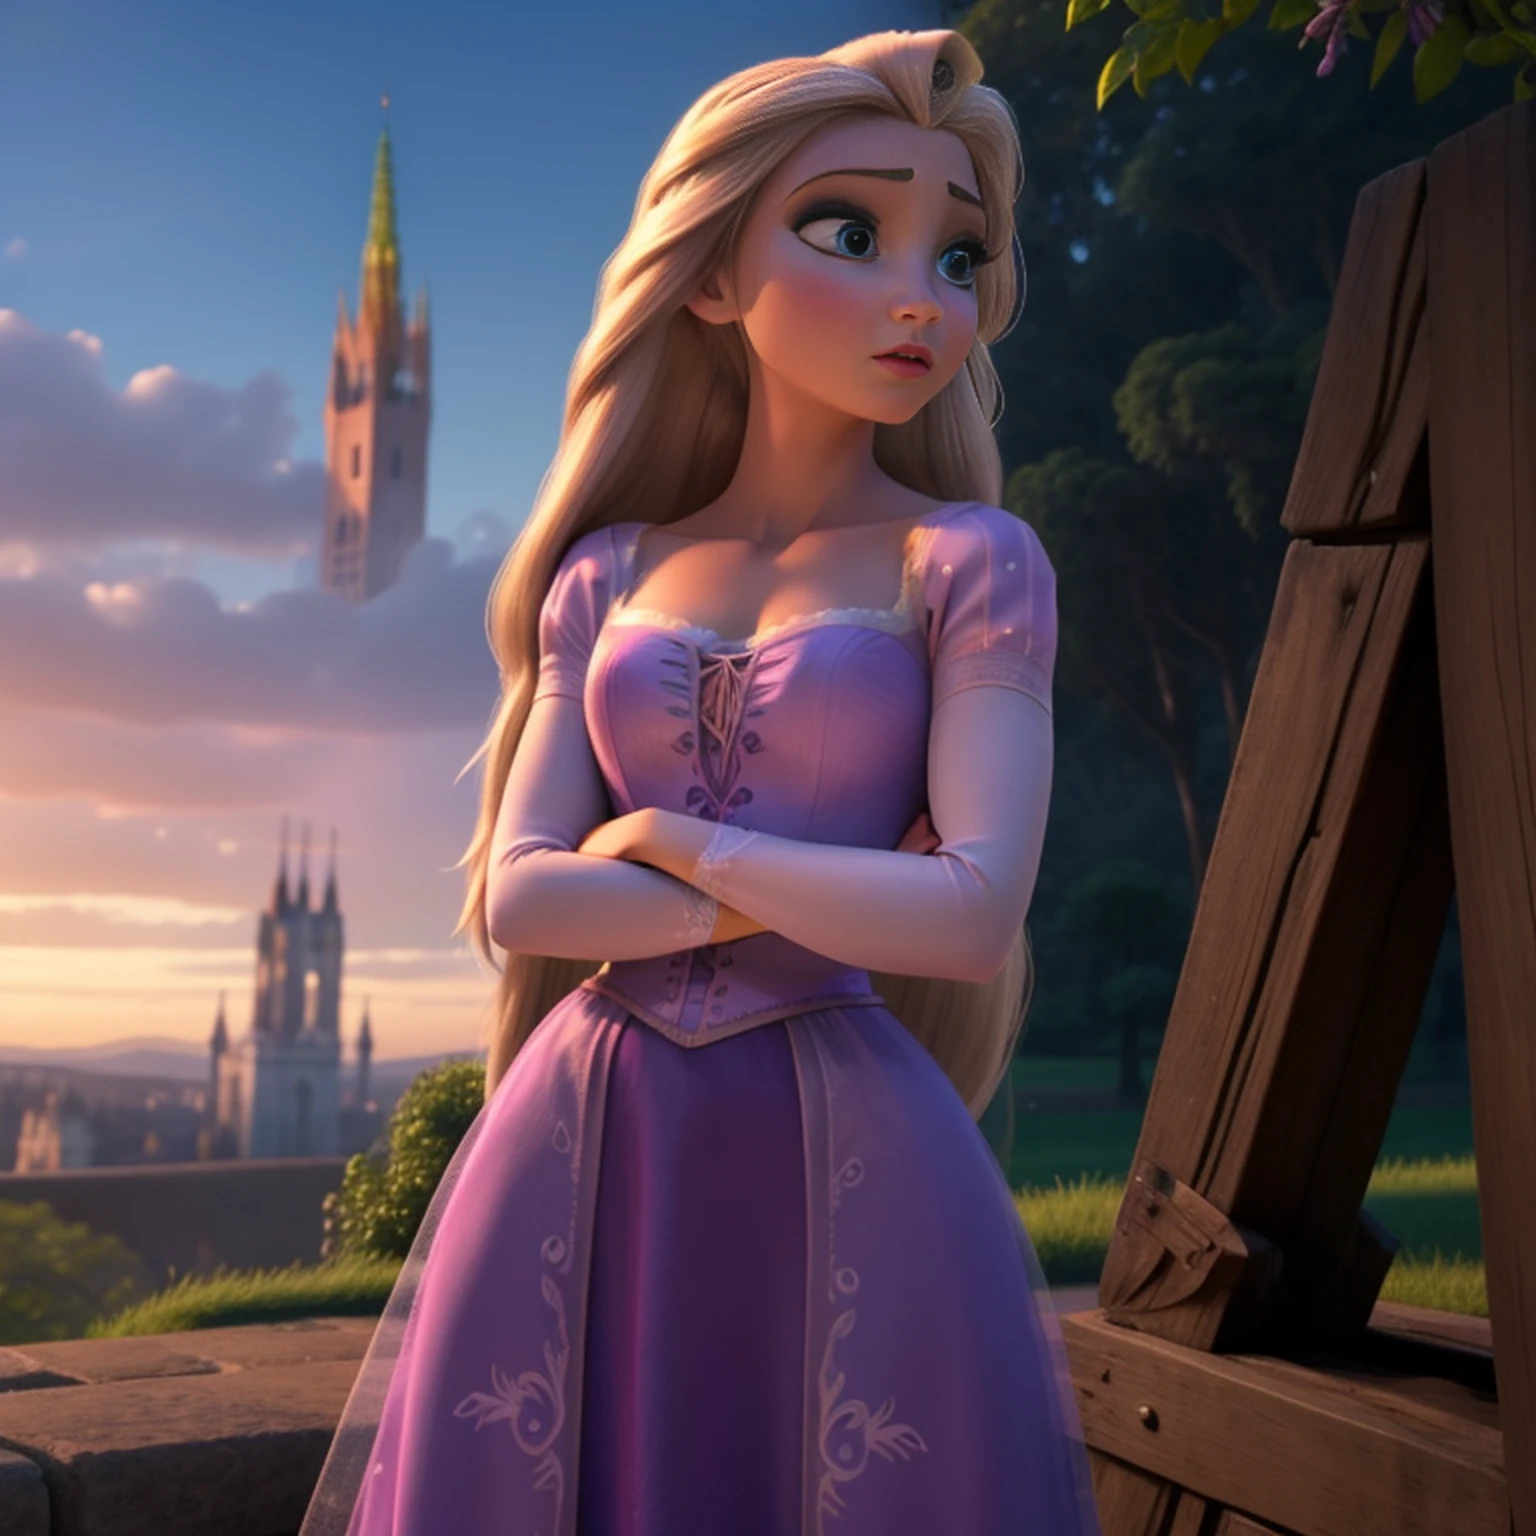 Elsa-Rapunzel Fusão, Mesclando modelos, Roupas da Rapunzel, Derretendo, 1 garota, lindo, personagem, mulher, fêmea, (parte mestre:1.2), (melhor qualidade:1.2), (sozinho:1.2), ((pose de luta)), ((campo de batalha)), cinematográfico, olhos perfeitos, pele perfeita, iluminação perfeita, sorrir, luz, cor, pele texturizada, detalhe, Beleza, maravilha, ultra-detalhado, rosto perfeito